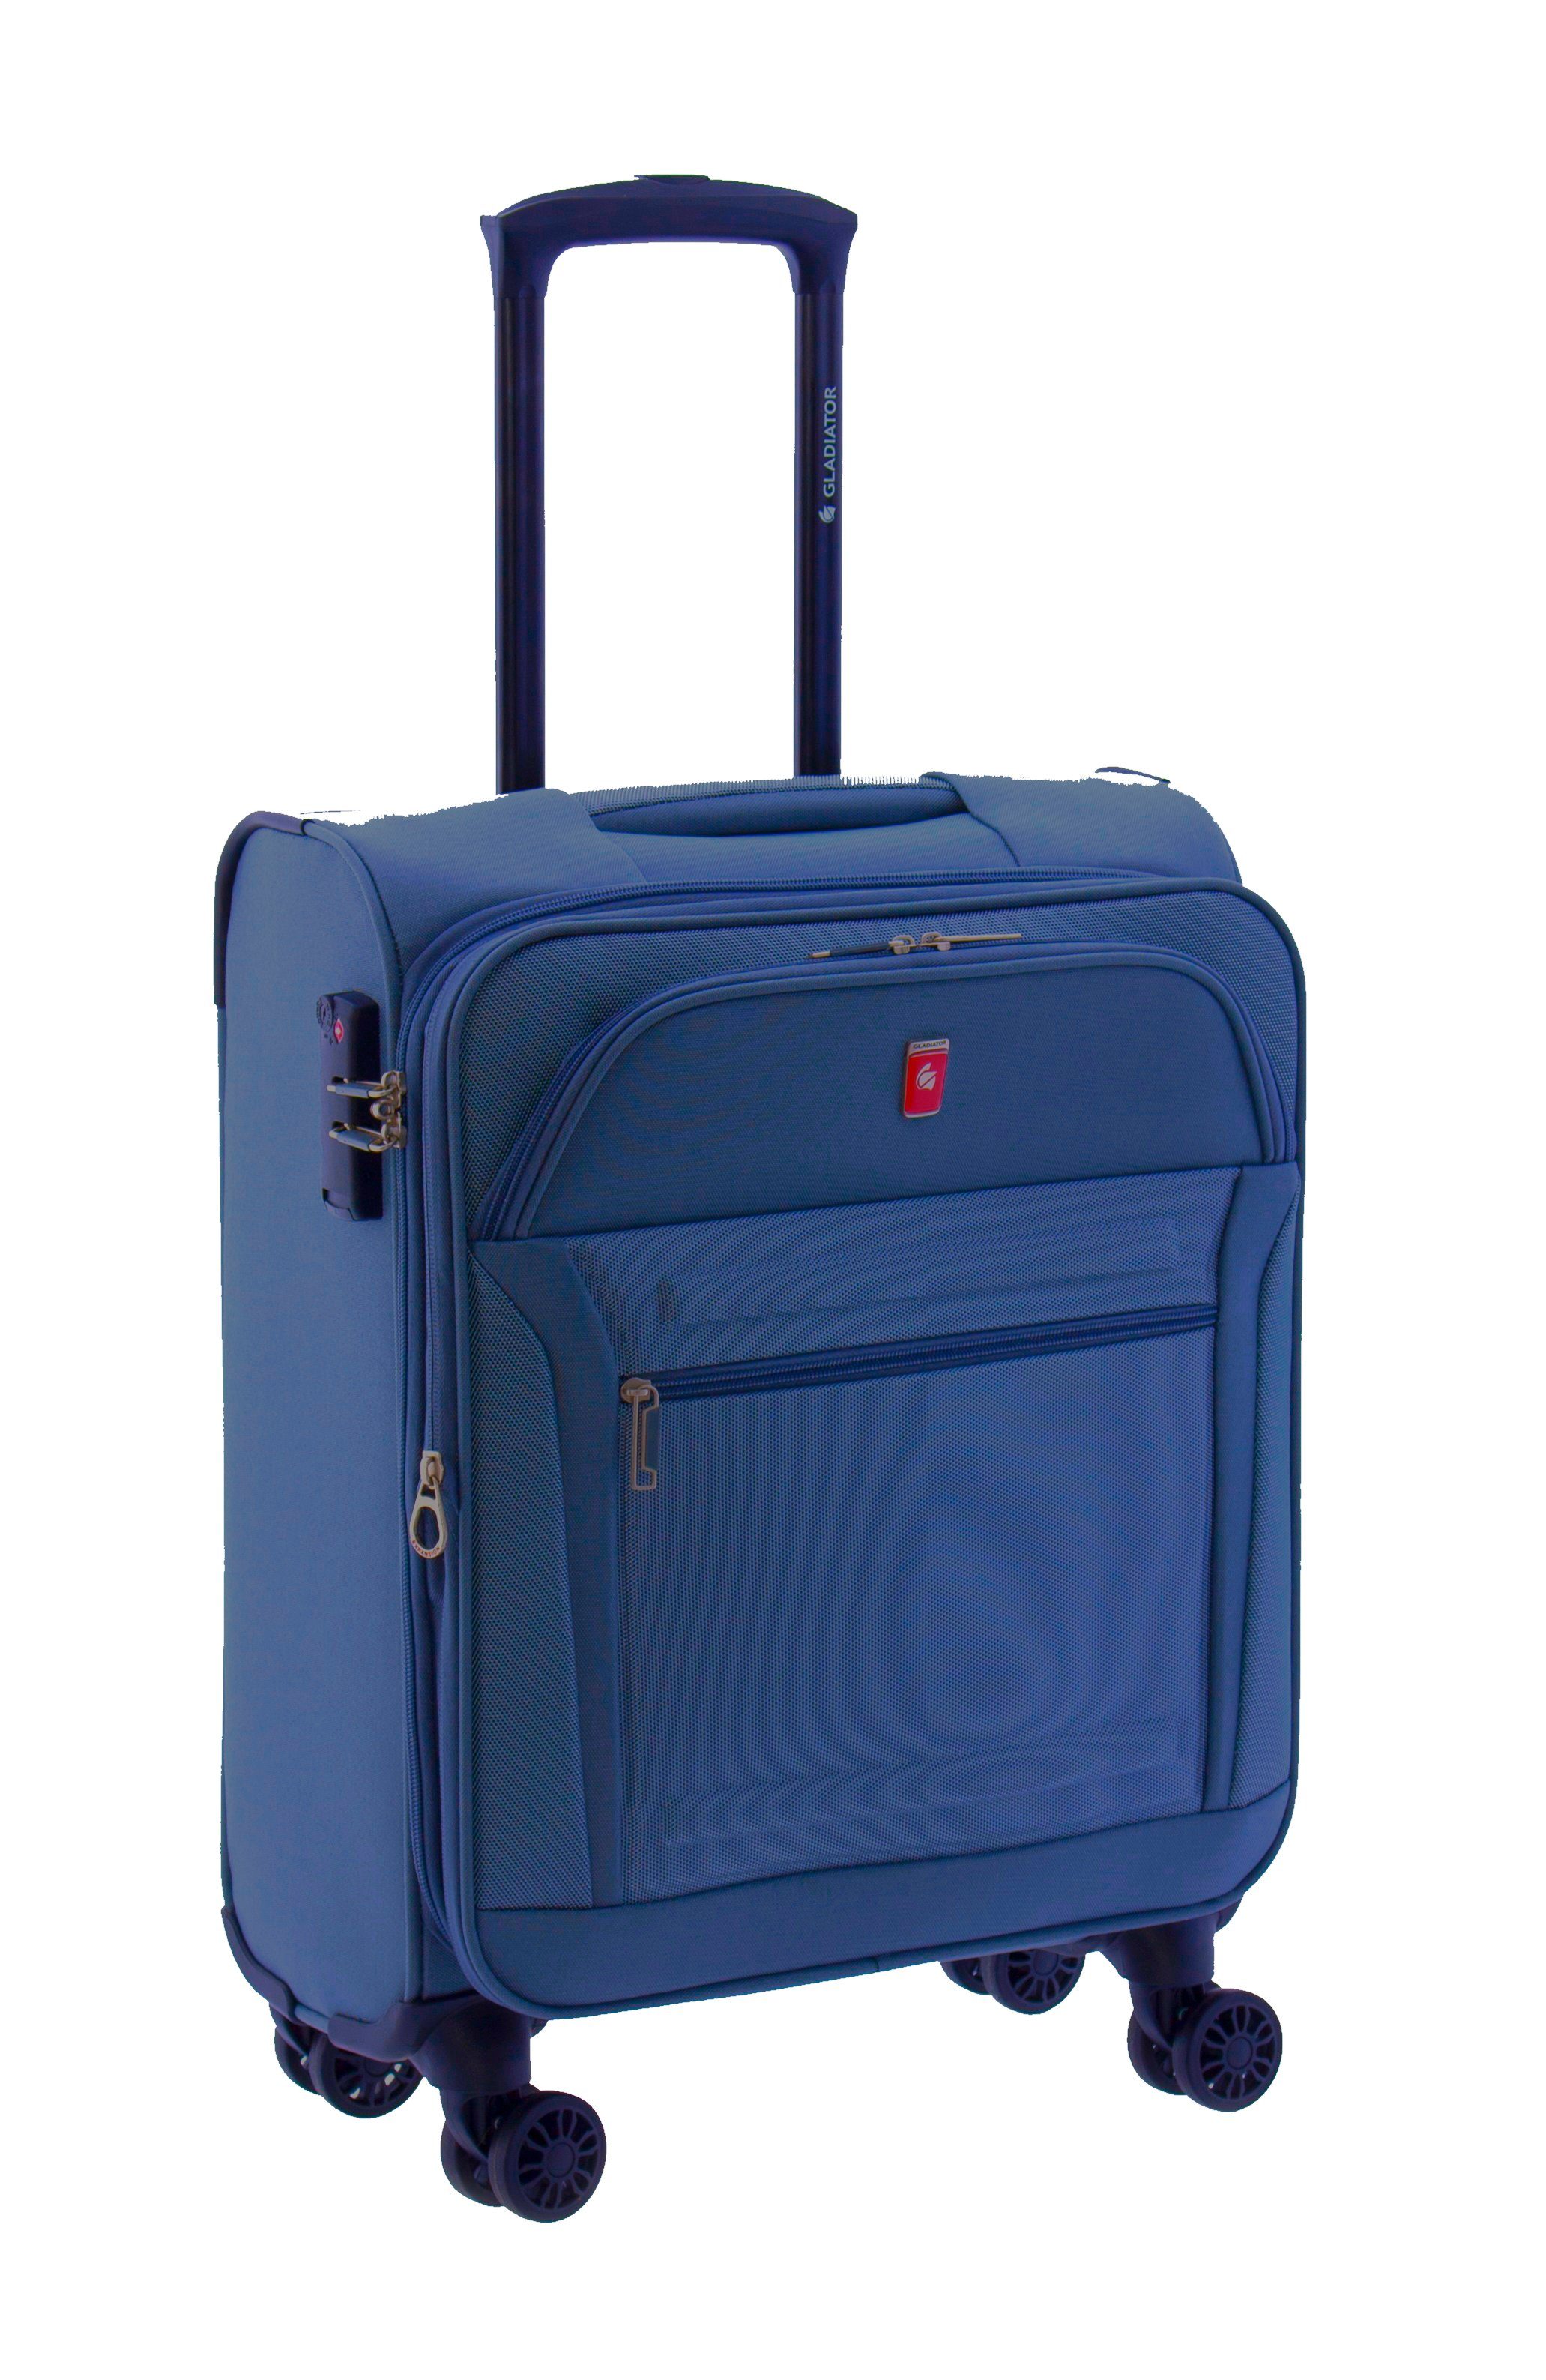 GLADIATOR Weichgepäck-Trolley 78, 68 od. 55cm - grau, braun, blau, Dehnfalte, TSA